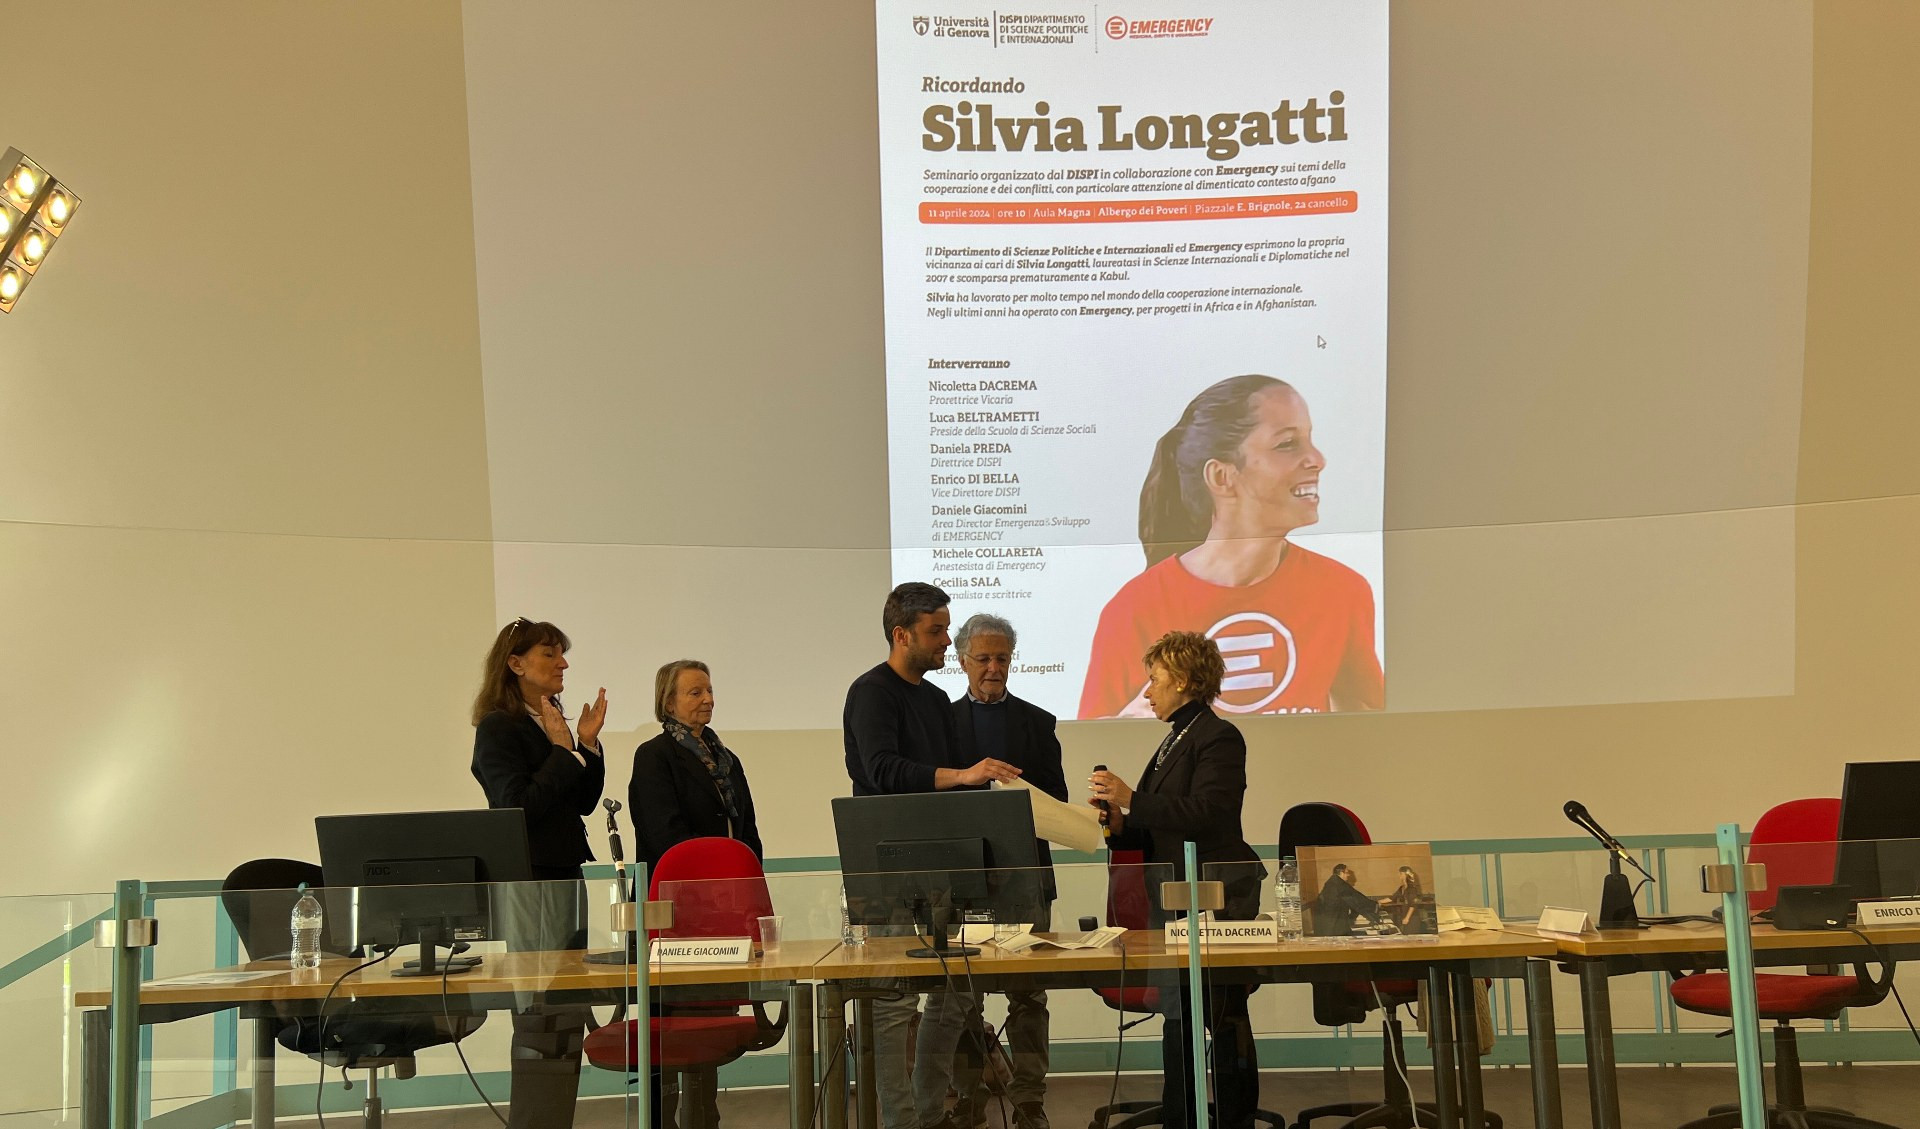 L'Università di Genova ricorda Silvia Longatti, medaglia d'argento all'operatrice di Emergency